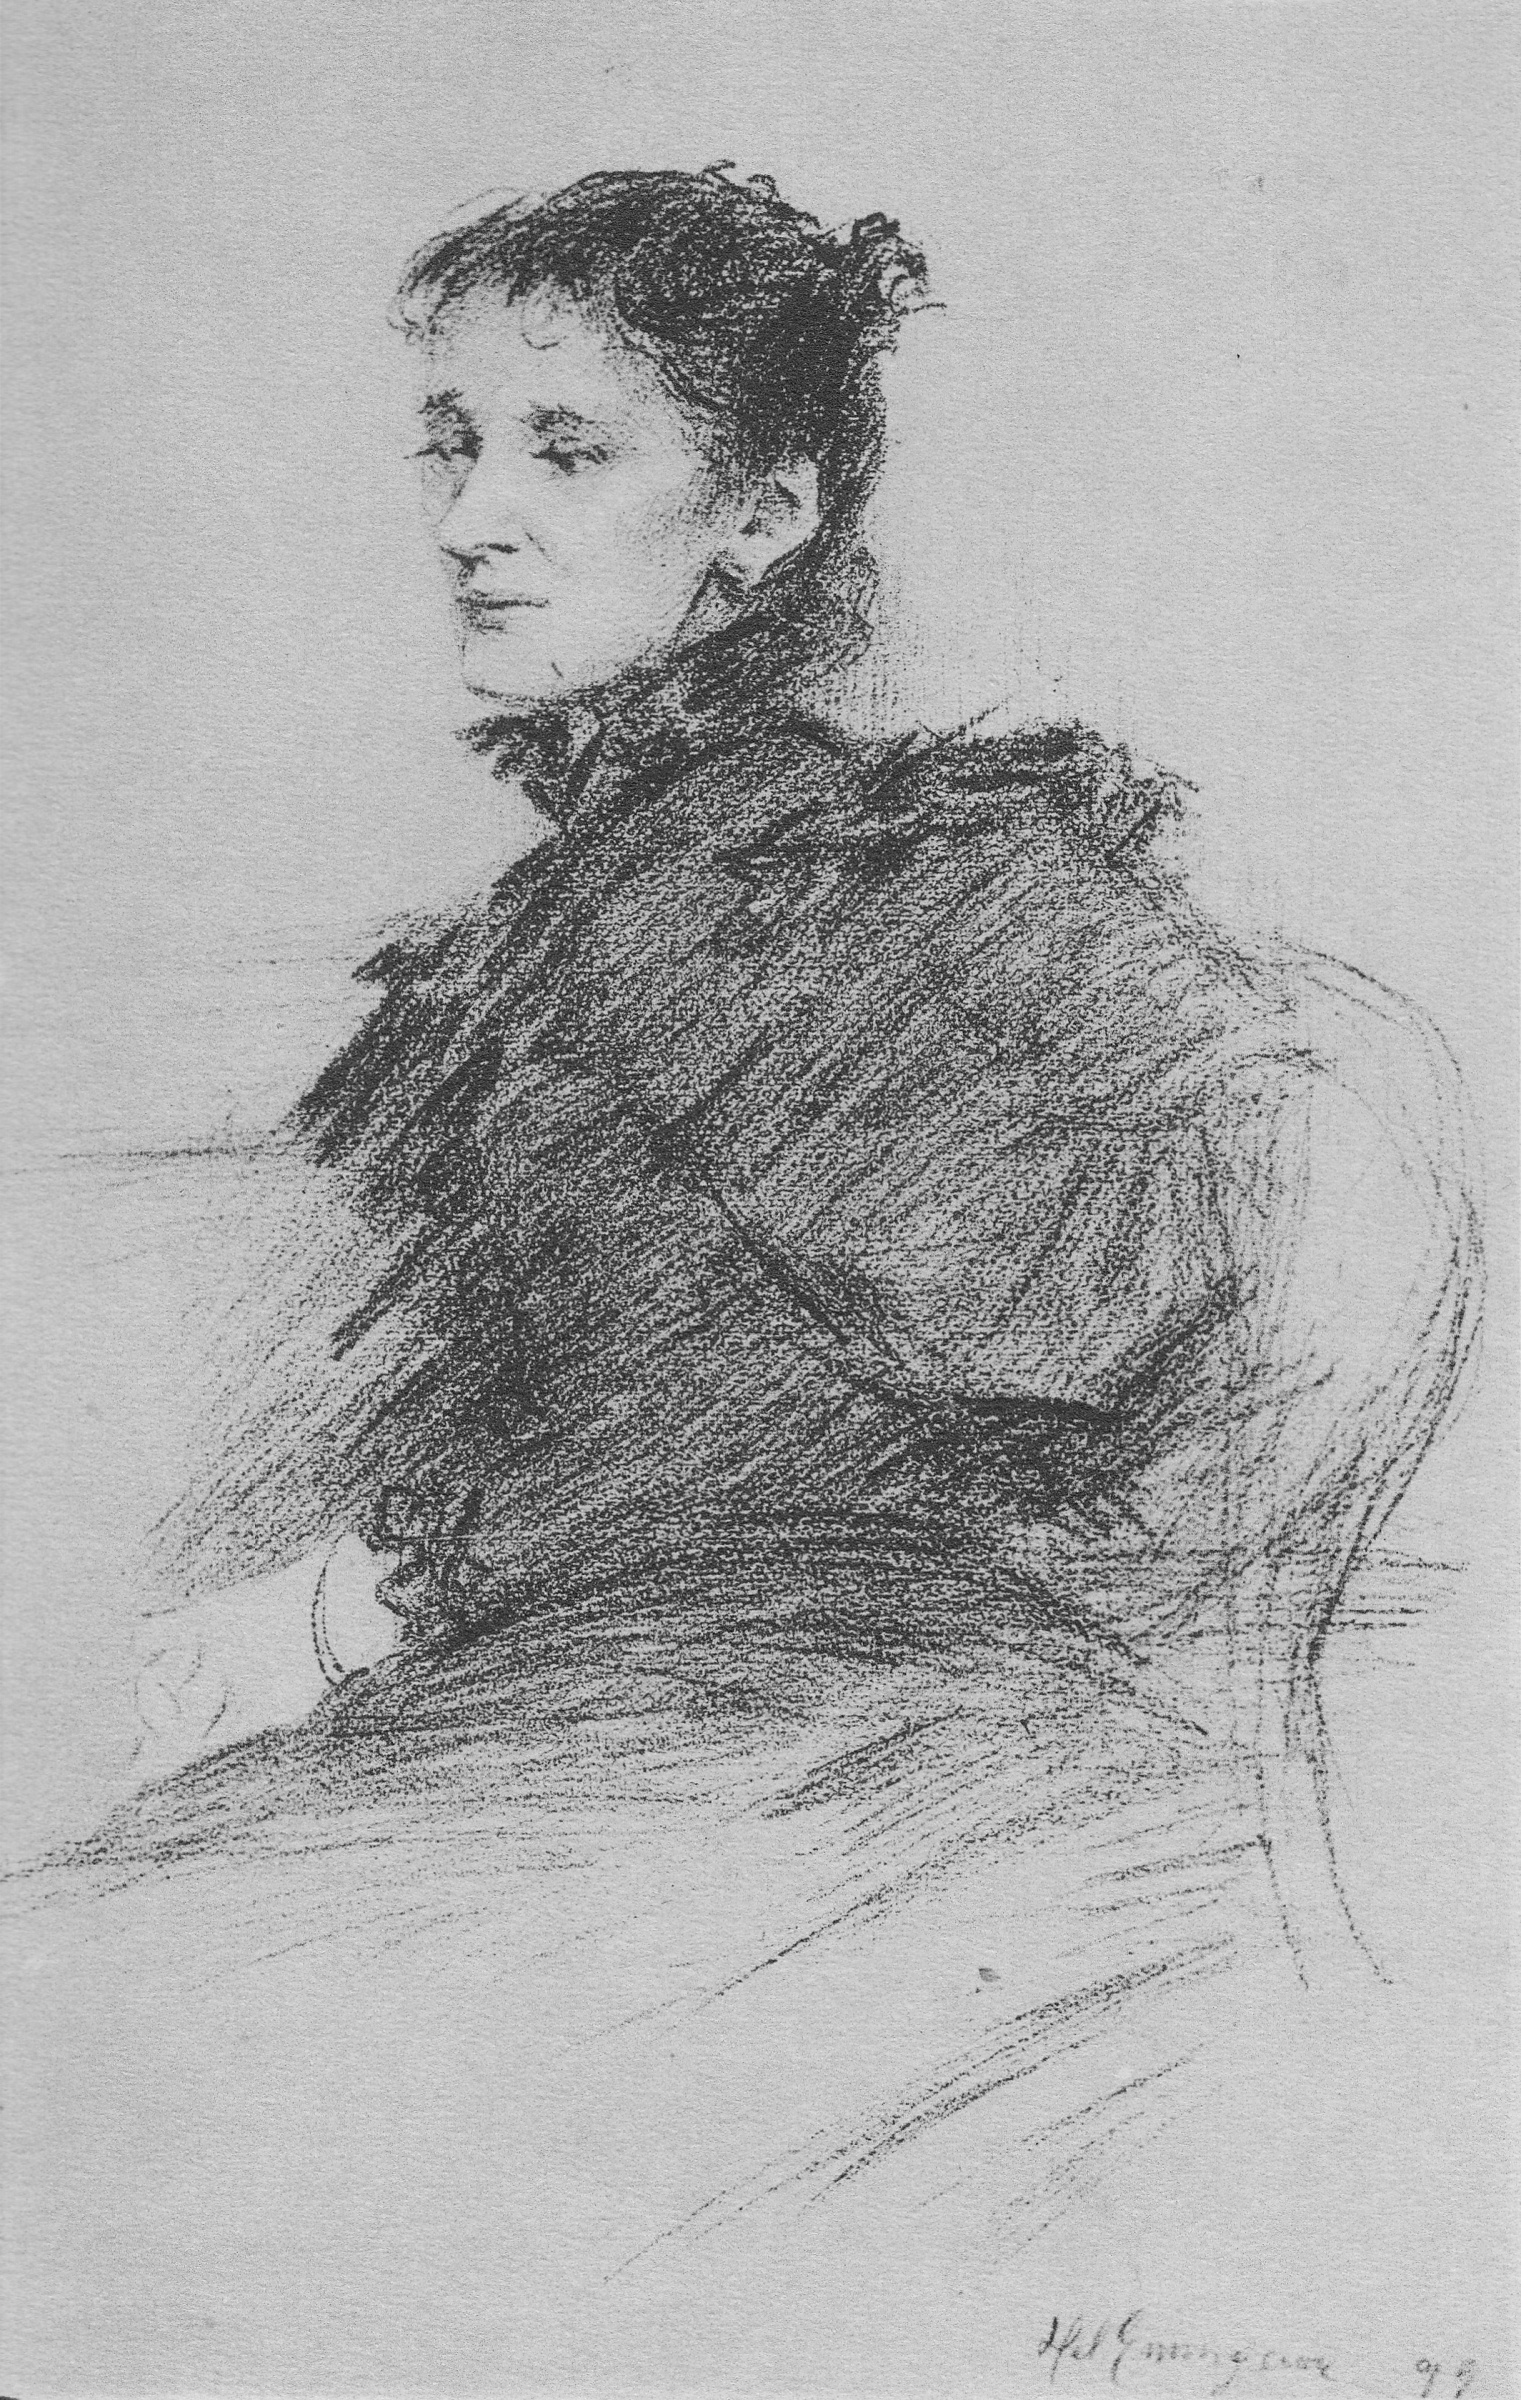 Helena Emingerová - 17 de agosto de 1858 - 4 de agosto de 1943